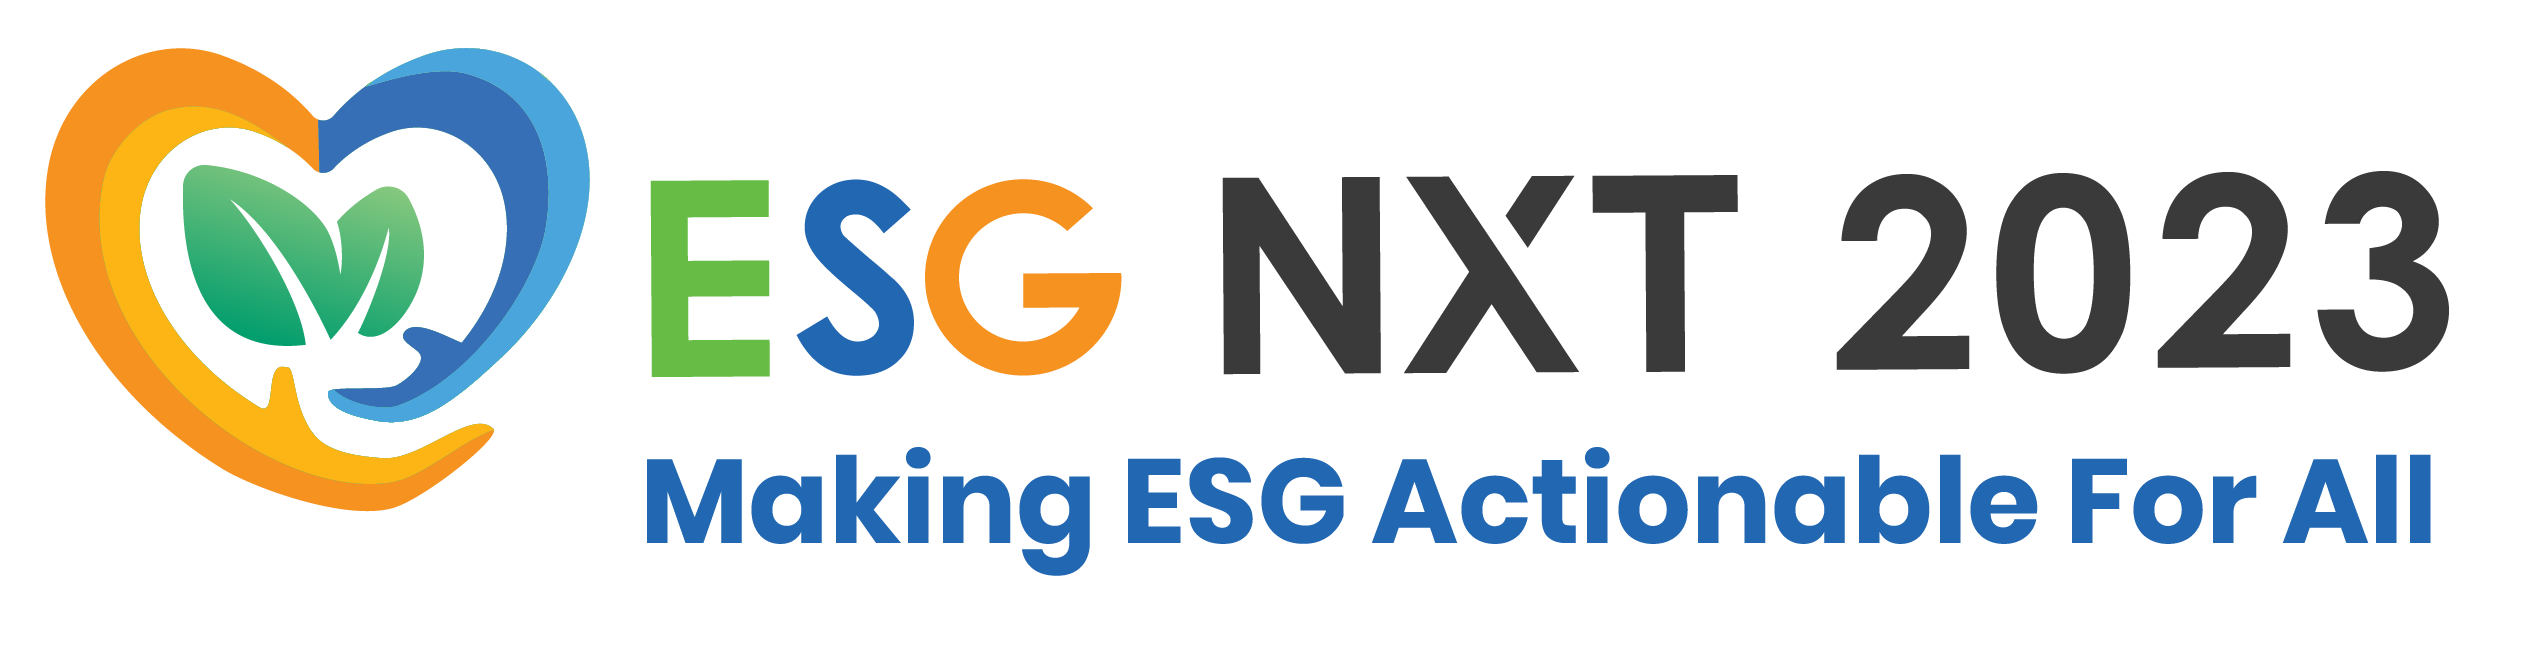 ESG NXT 2023